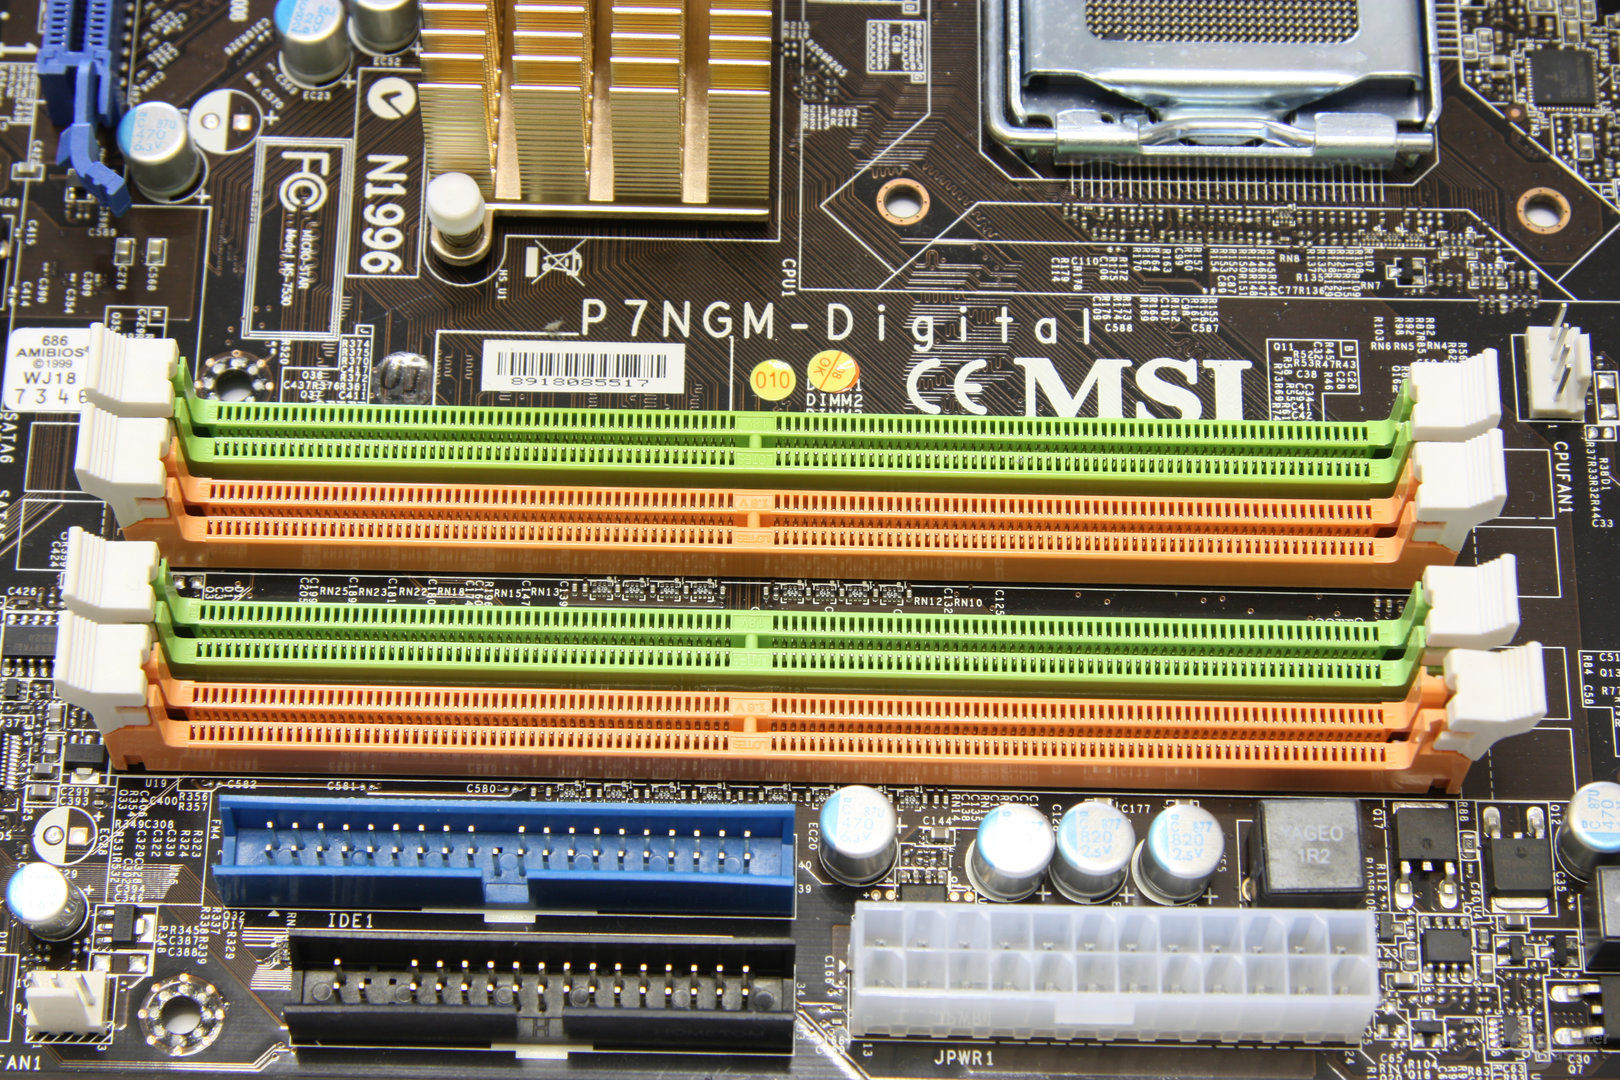 MSI P7NGM-Digital RAM-Slots